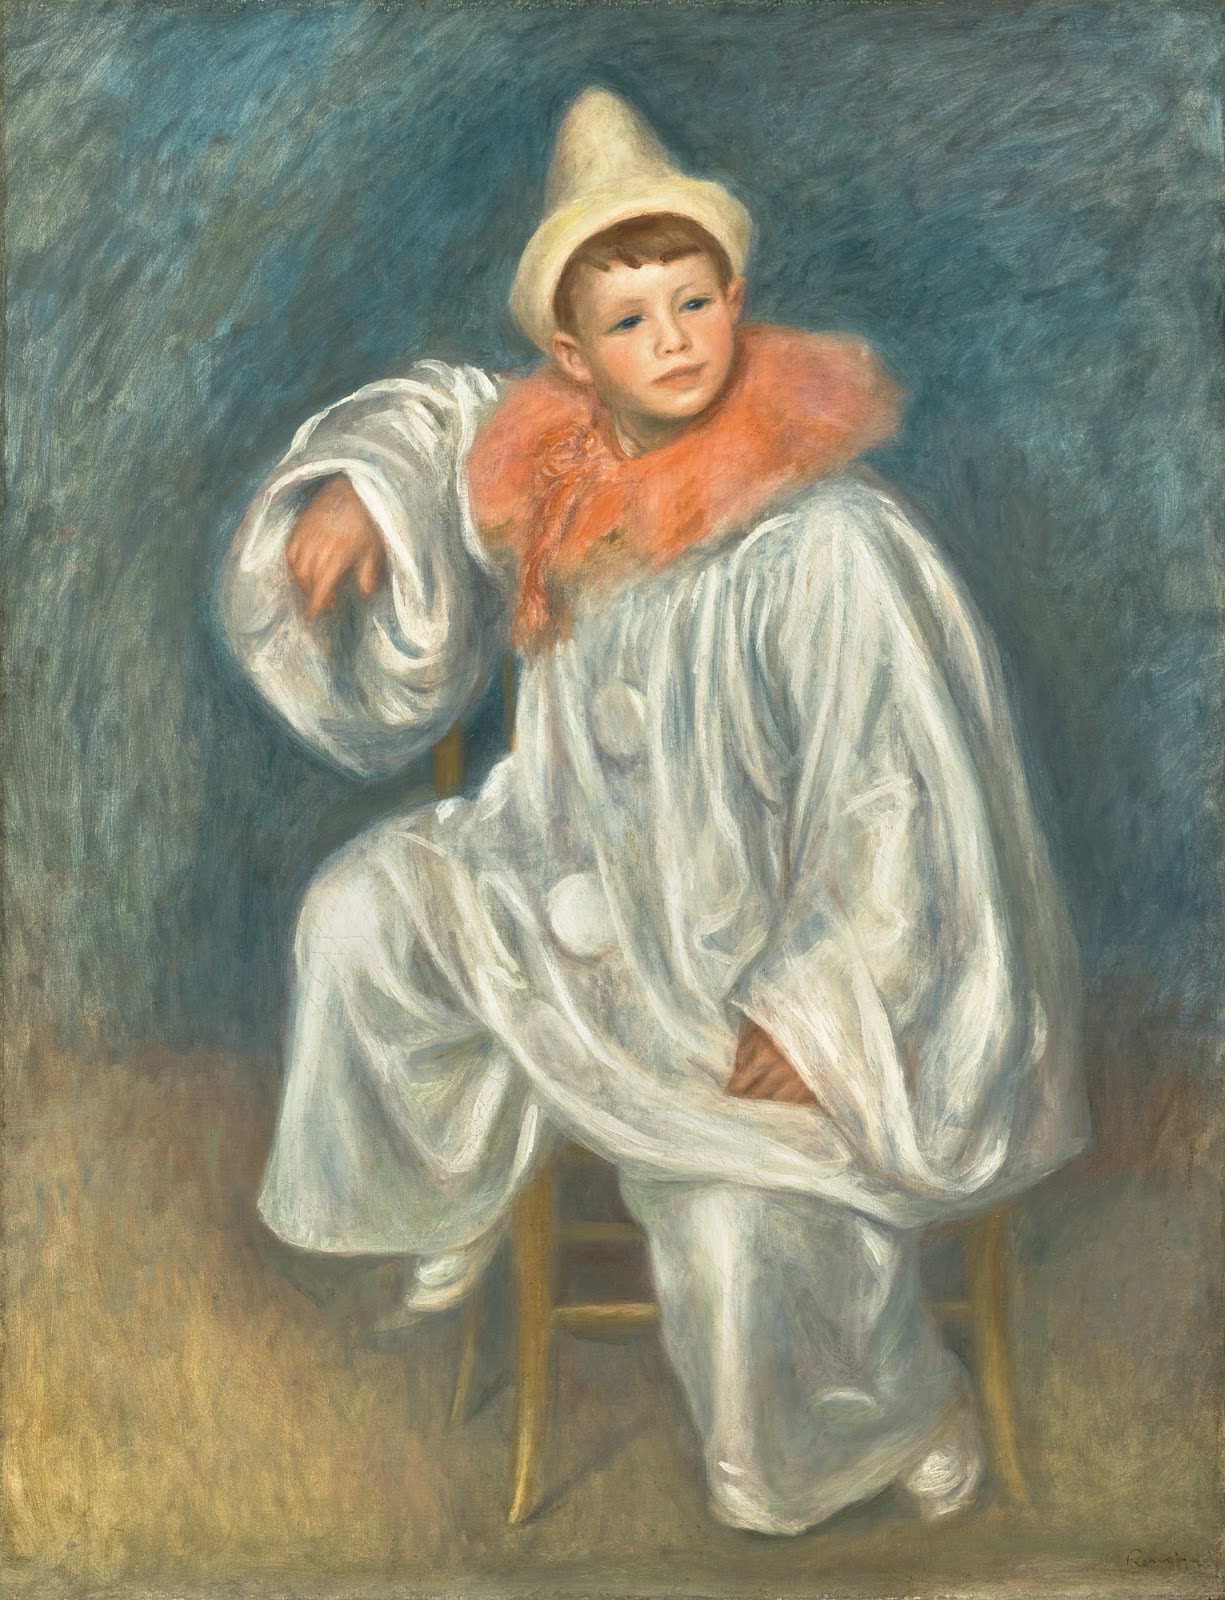 Pierre+Auguste+Renoir-1841-1-19 (883).jpg